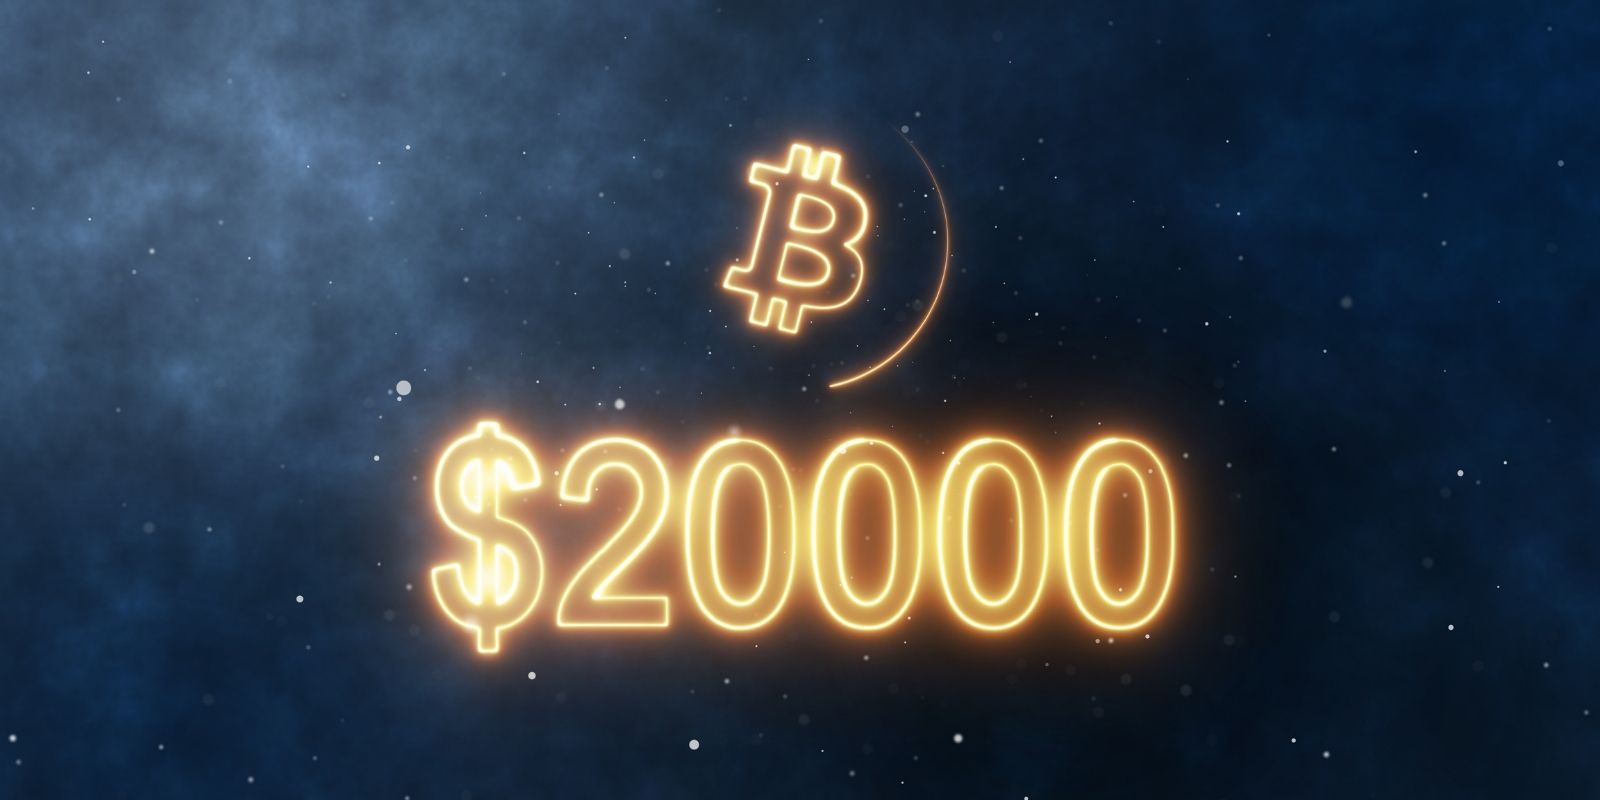 Le prix du Bitcoin (BTC) franchit pour la première fois les 20 000 dollars